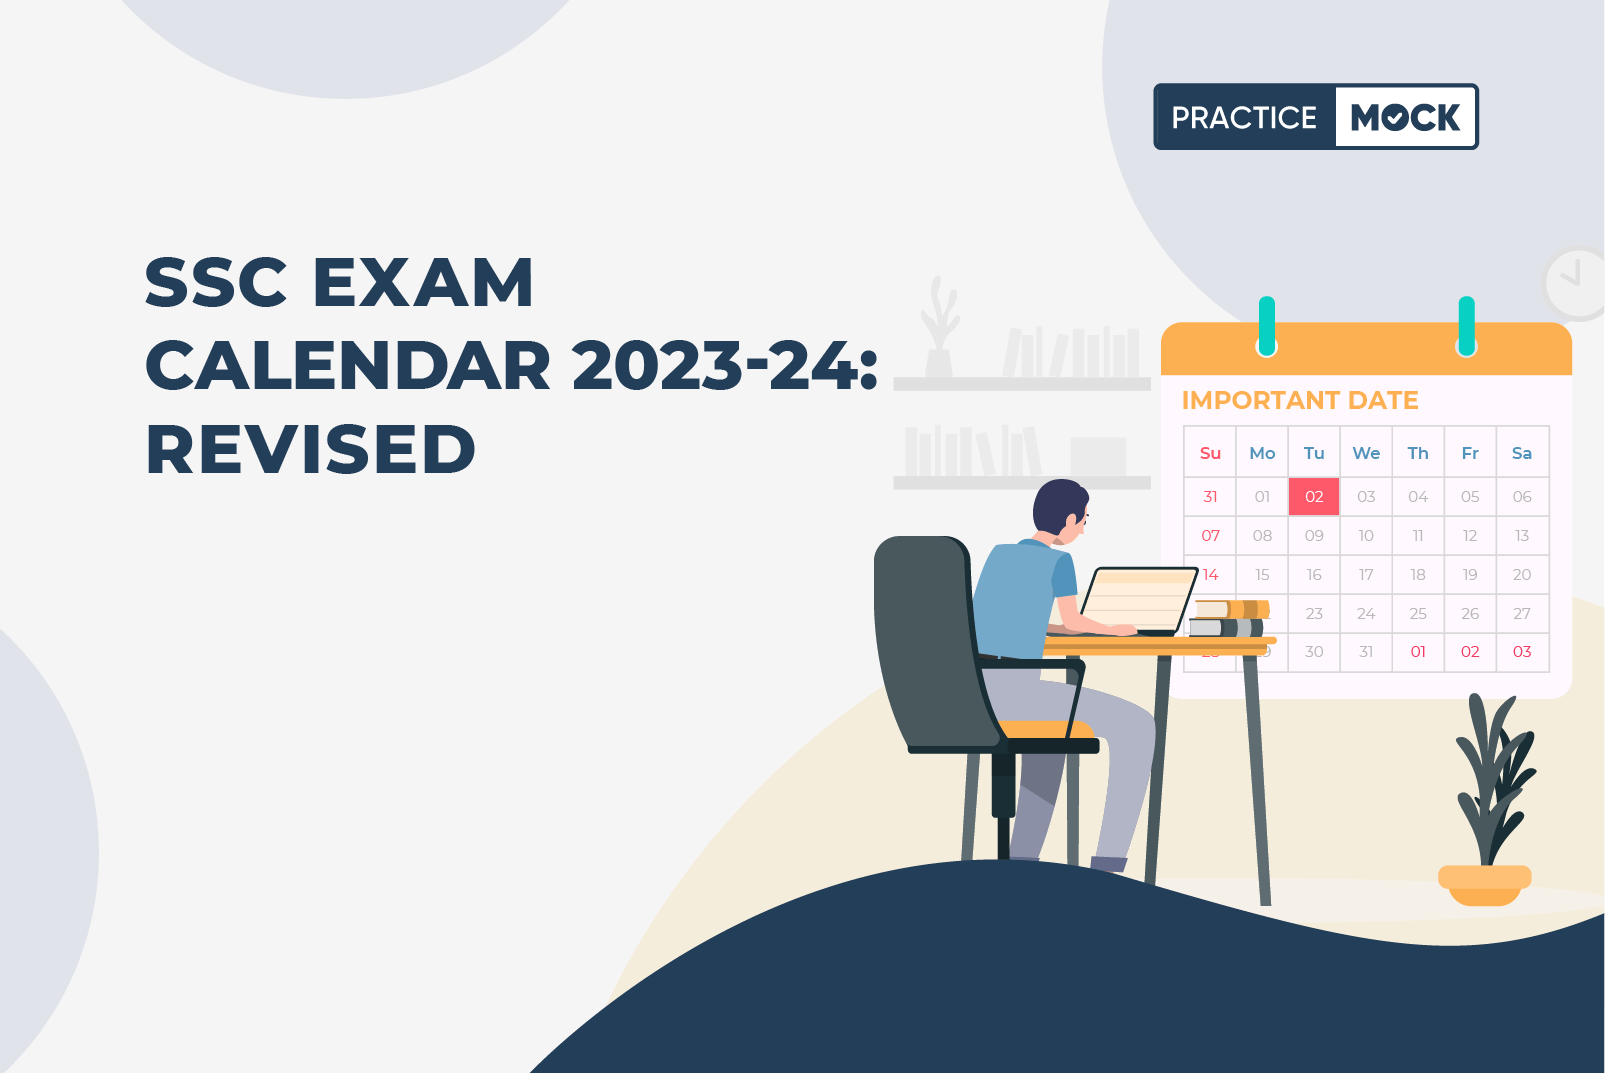 SSC Exam Calendar 2023-24 Revised